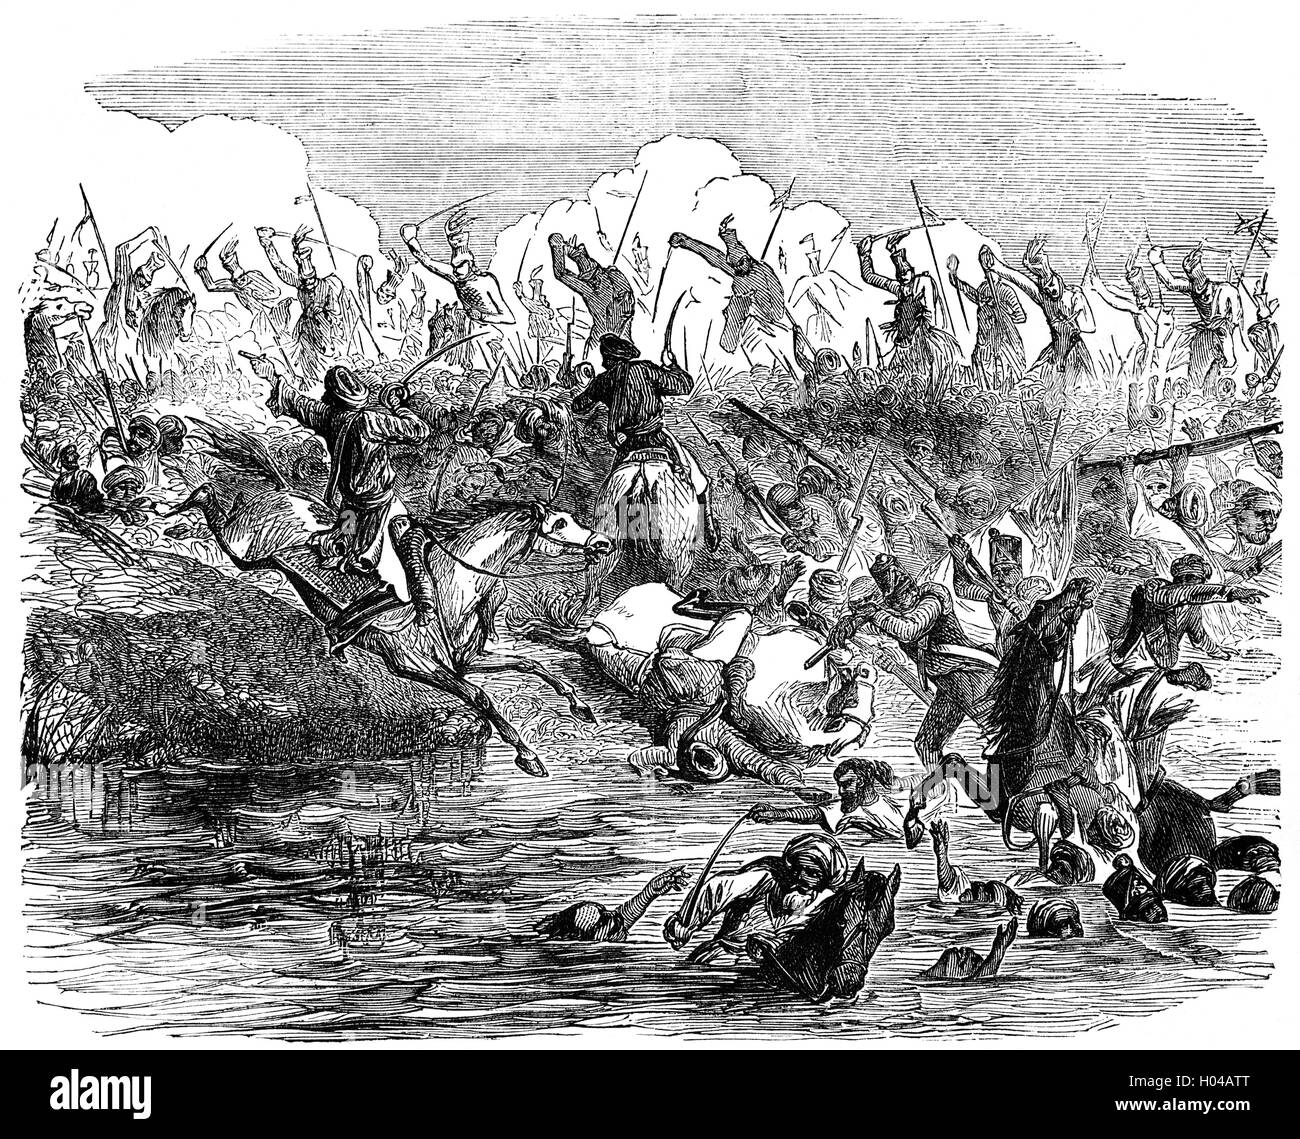 El ejército británico dirigido por el Coronel Sir Edward Harris Greathed (1812 - 1881) persiguiendo amotinados en la batalla de Agra durante la rebelión india de 1857. Indian rebeldes atacaron una columna de tropas británicas que habían aliviado una guarnición en Agra, pero aunque se sorprendió a la columna, fueron derrotados y dispersados. Foto de stock